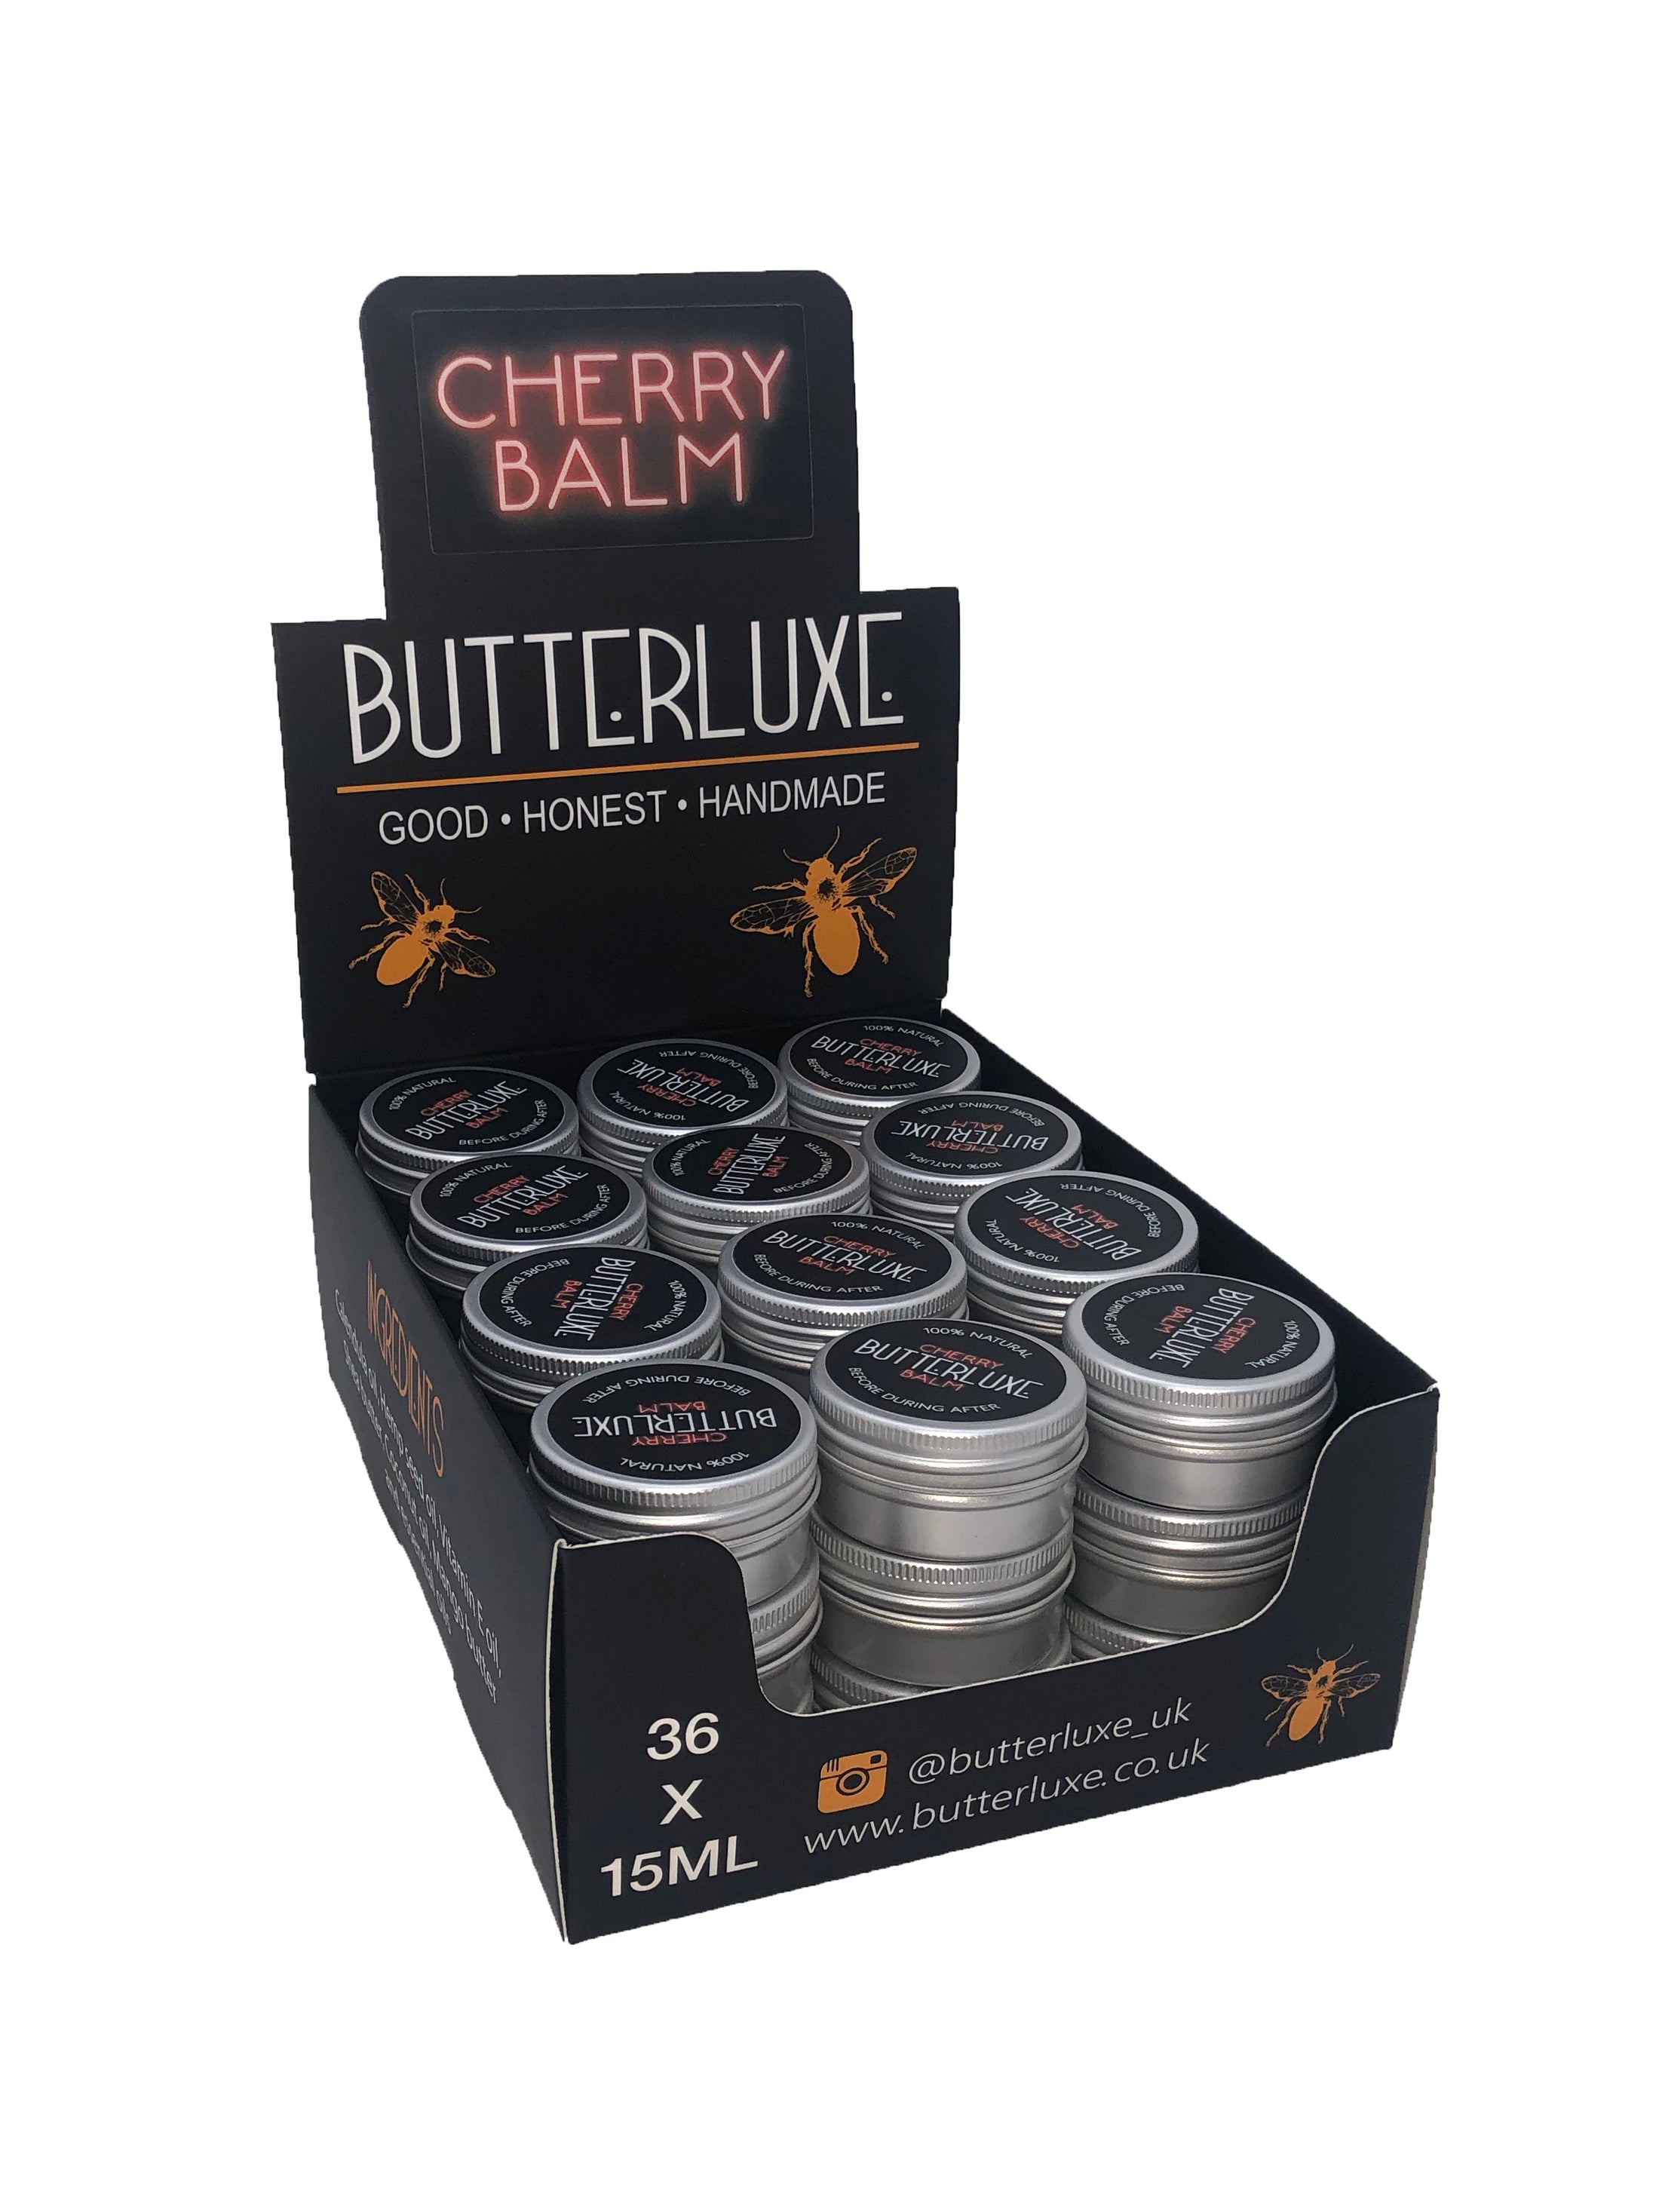 Cherry Balm – Butterluxe Limited